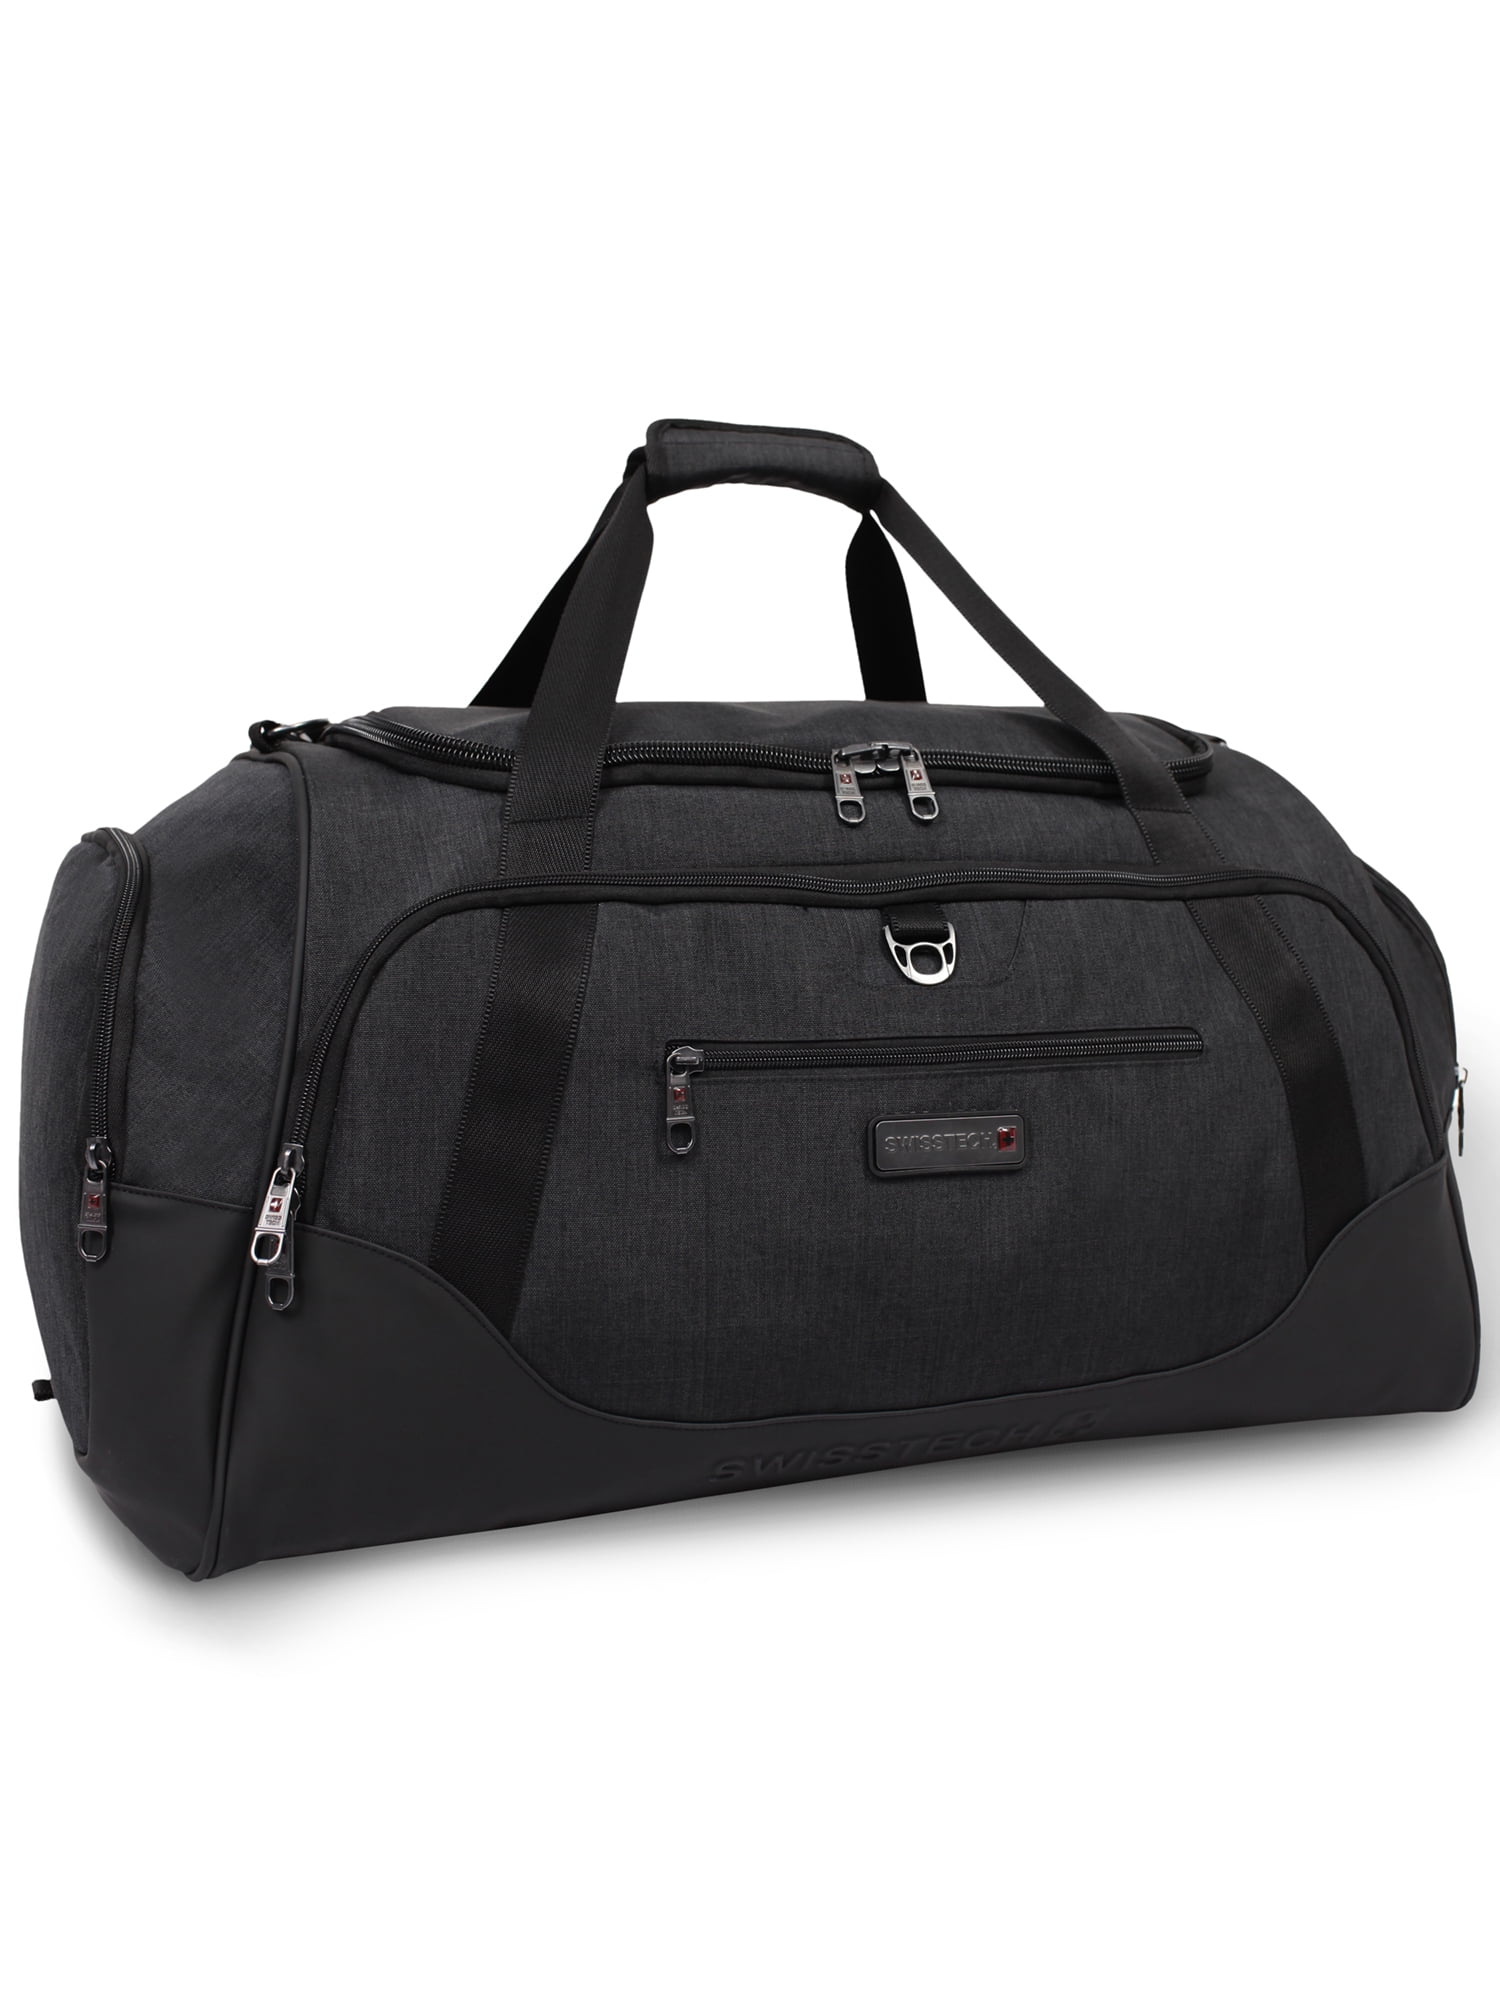 FC Premium Duffel Bag Gray